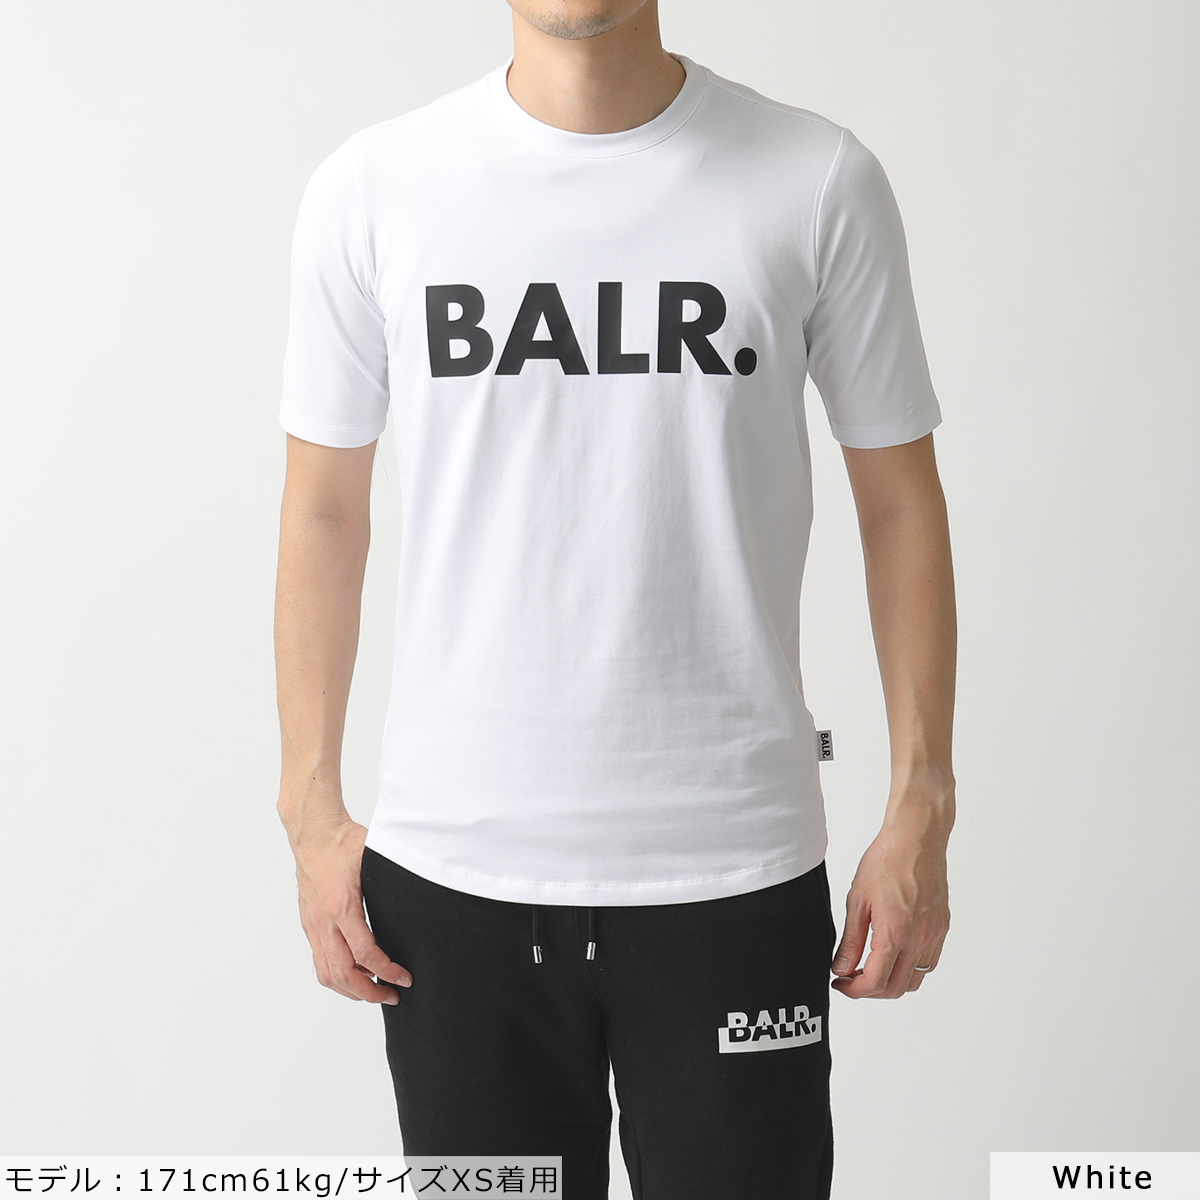 BALR. ボーラー Brand t-Shirt BALR. ボーラー Brand Athletic Shirt (T-Shirt) B10001  カラー5色 クルーネック 半袖 Tシャツ カットソー ロゴT メンズ | インポートセレクト musee